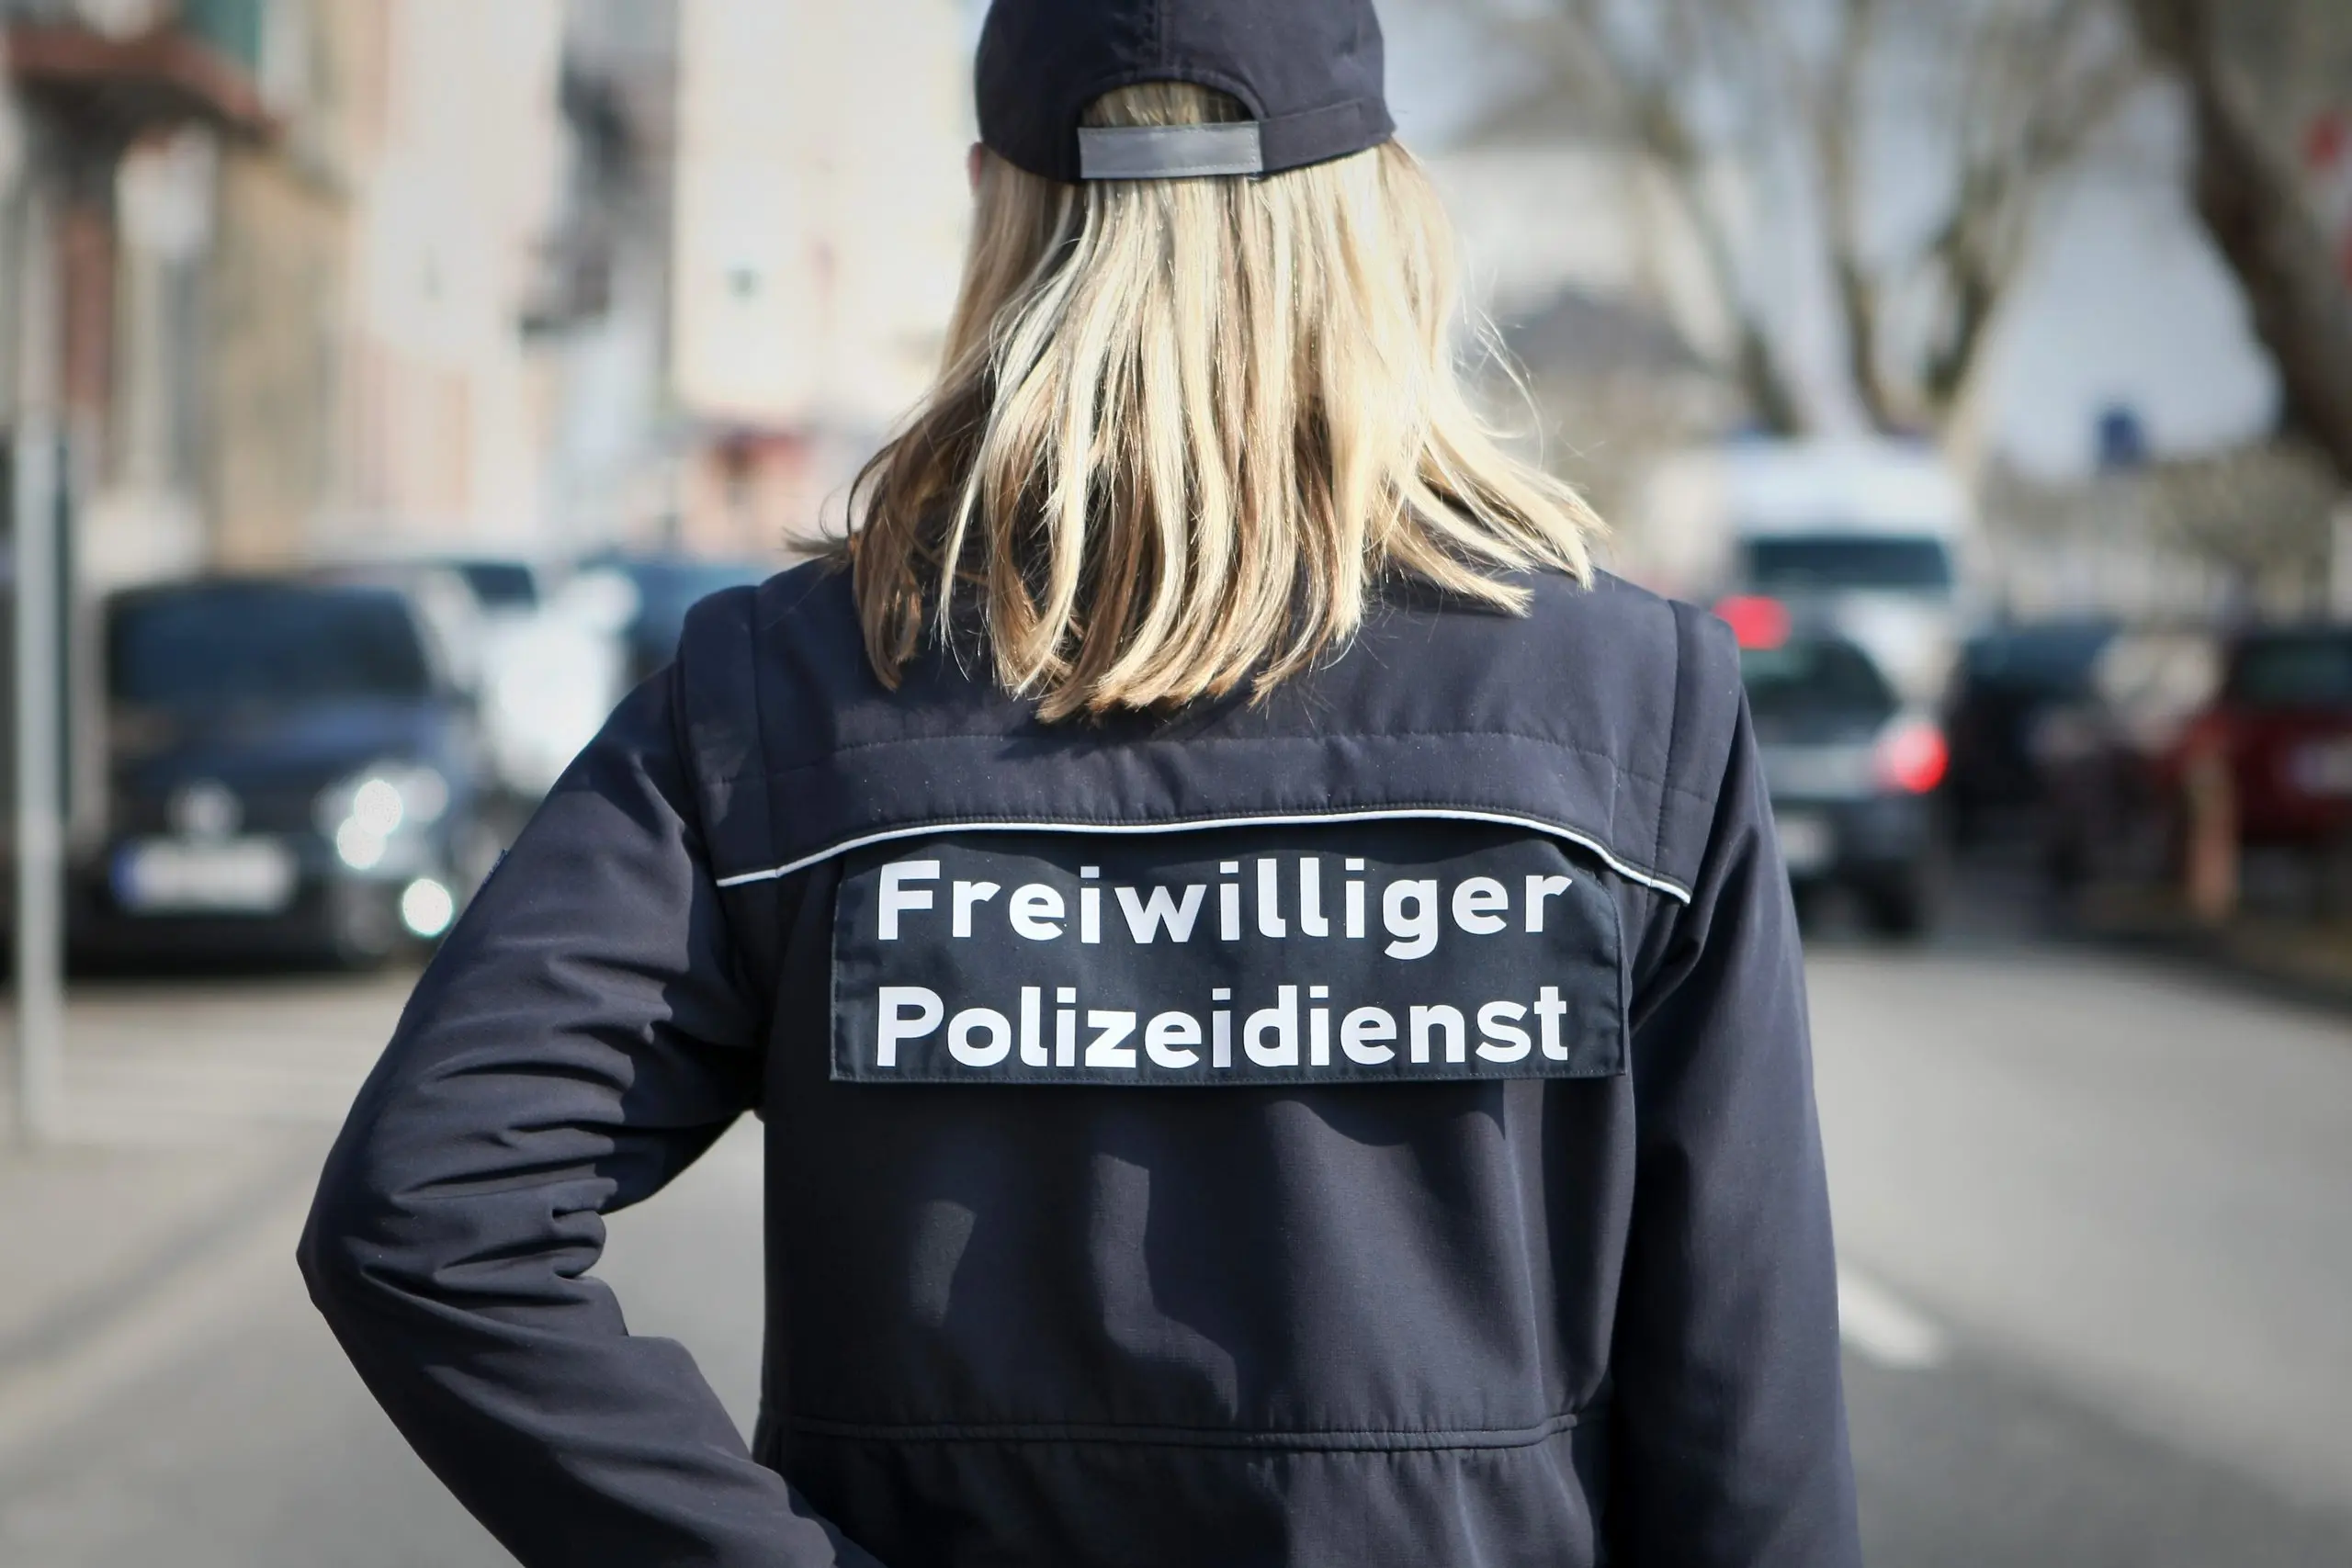 Eine Frau mit dem Aufdruck auf der Jacke "Freiwilliger Polizeidienst"